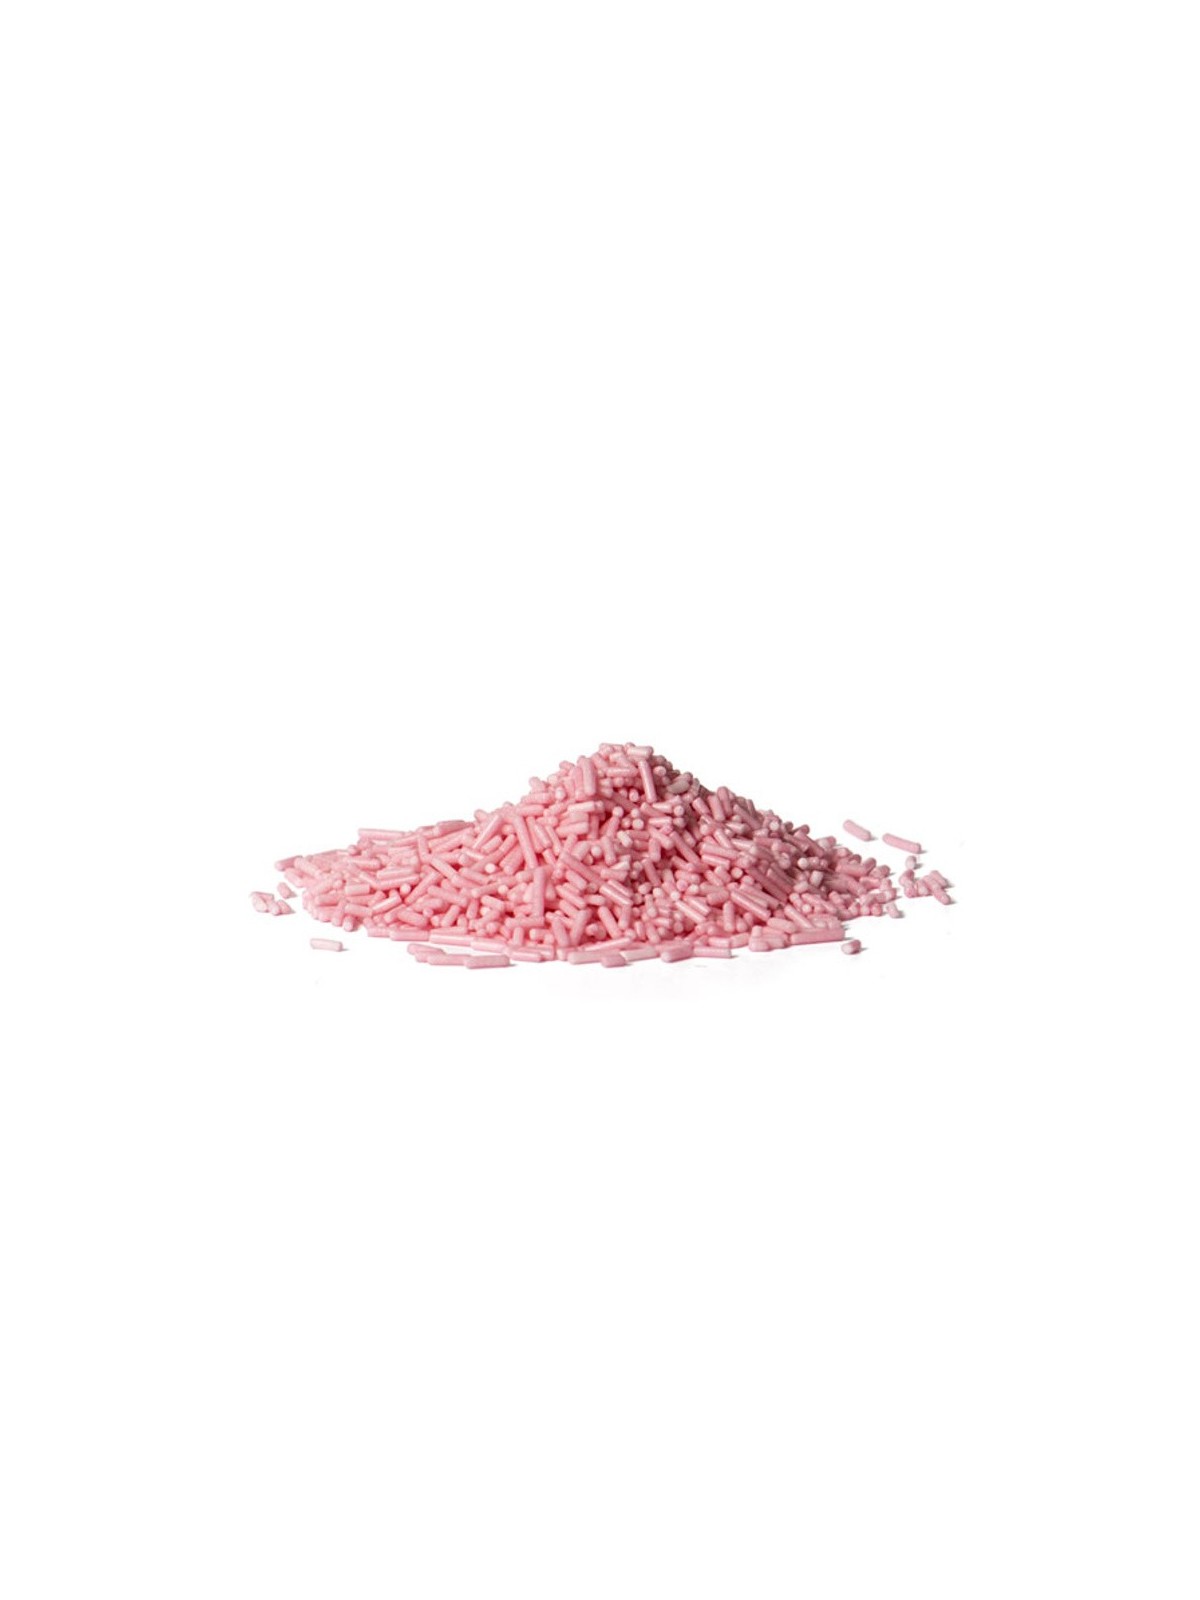 Zuckerstäbchen - Pink - 100g